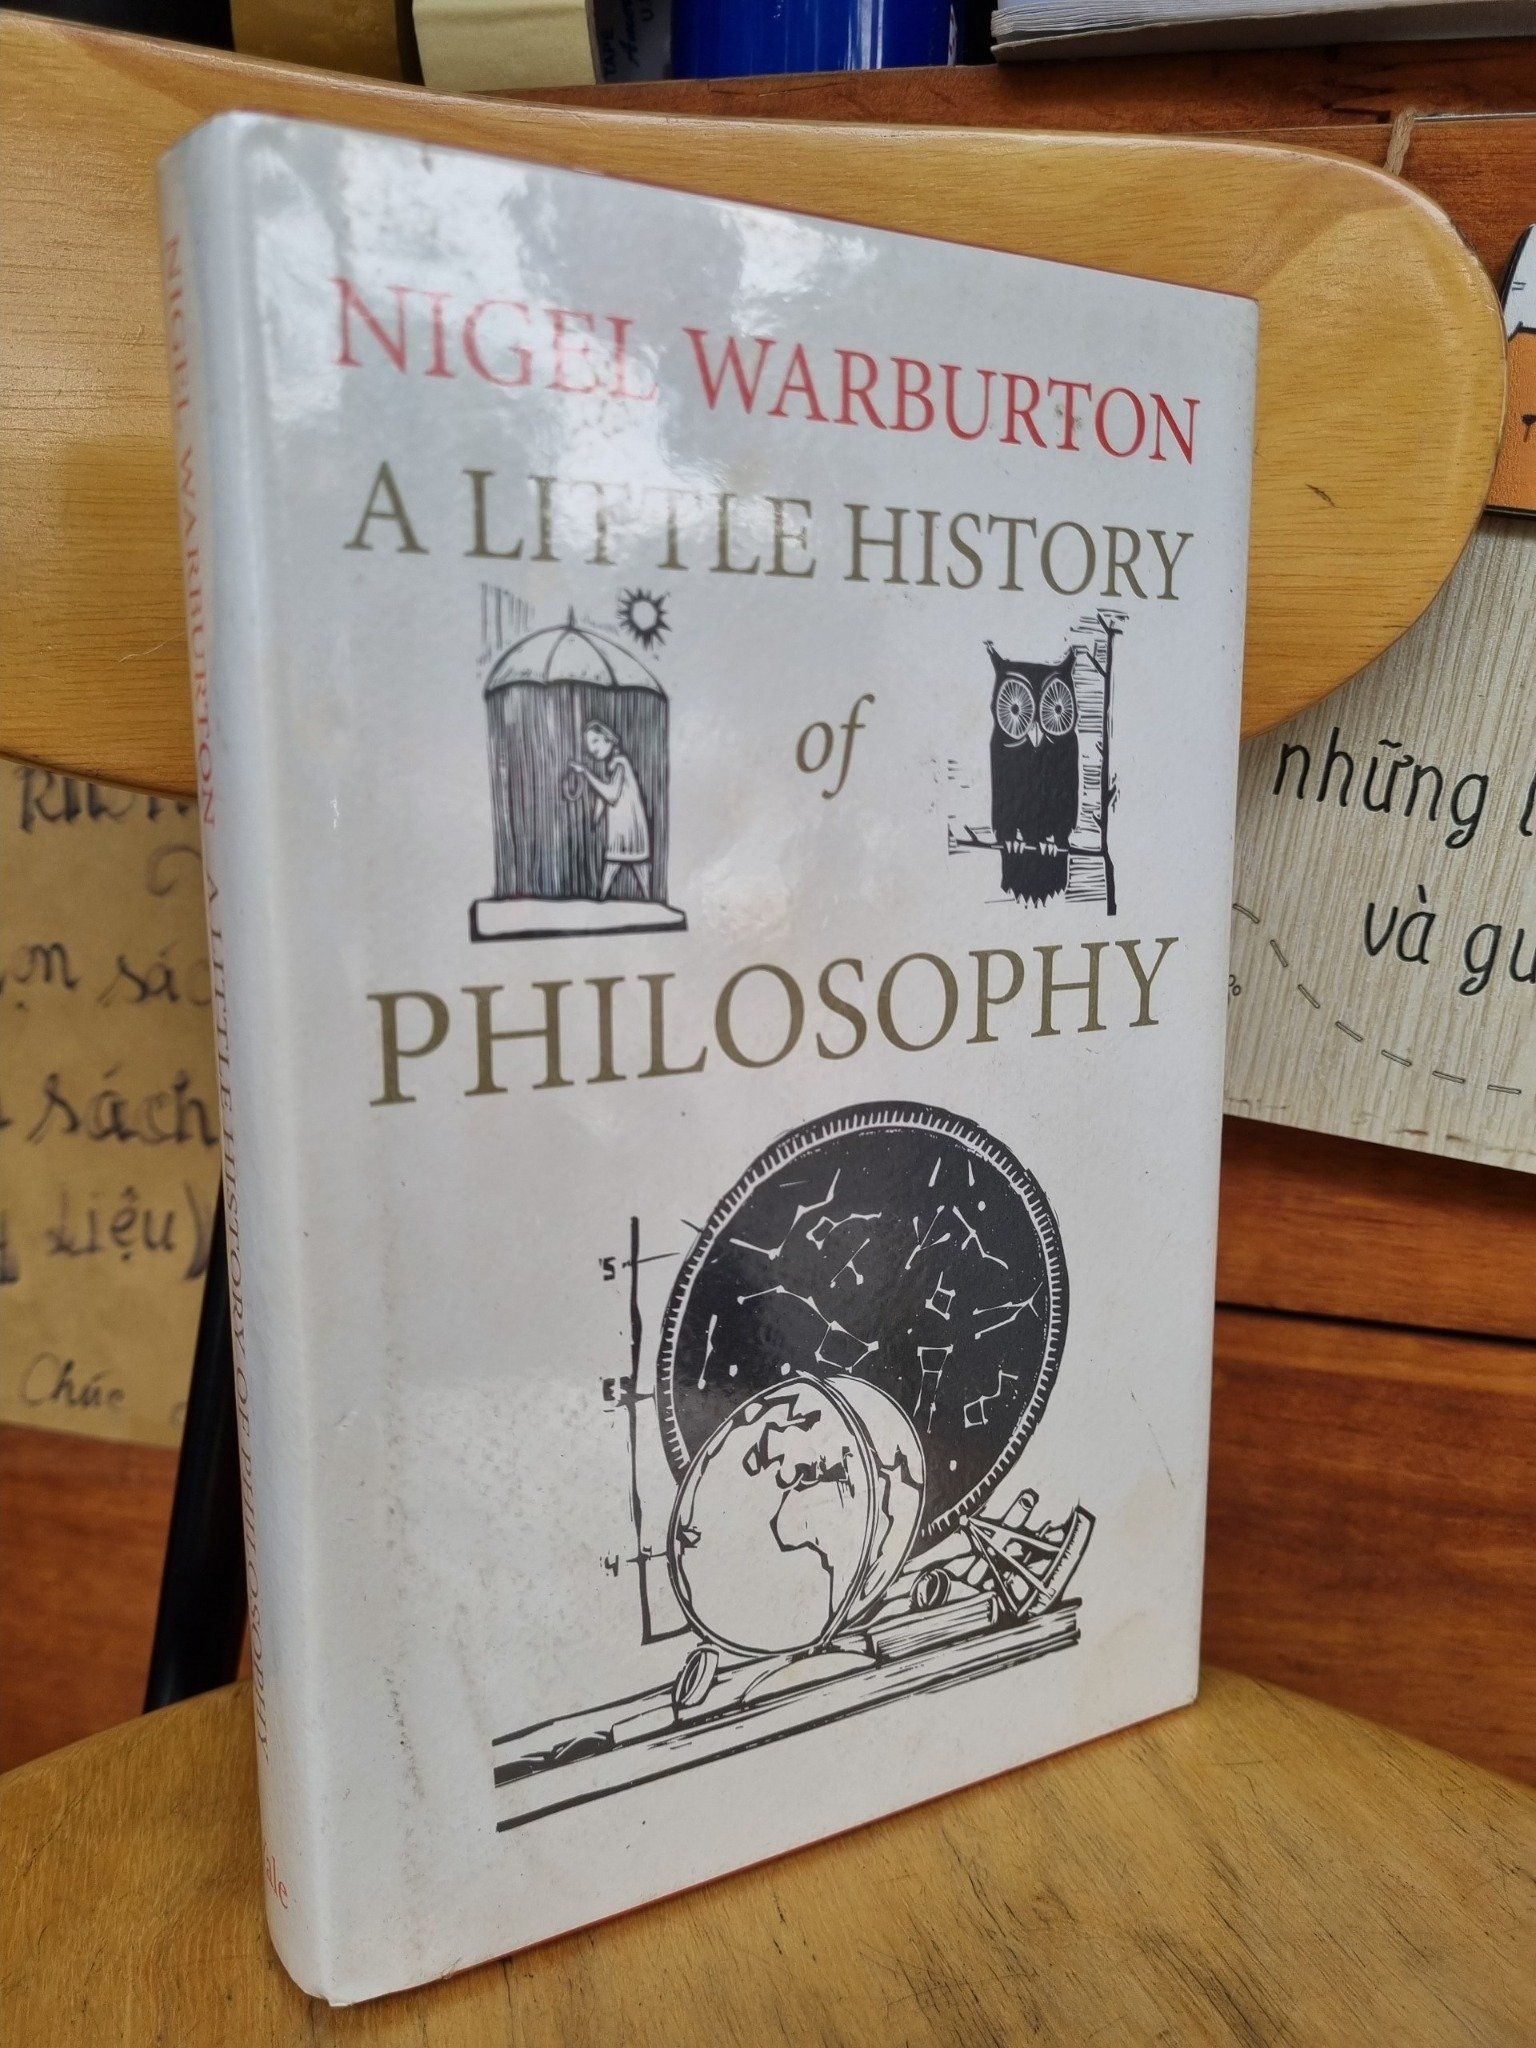  A LITTLE HISTORY OF PHILOSOPHY - NIGEL WARBURTON 